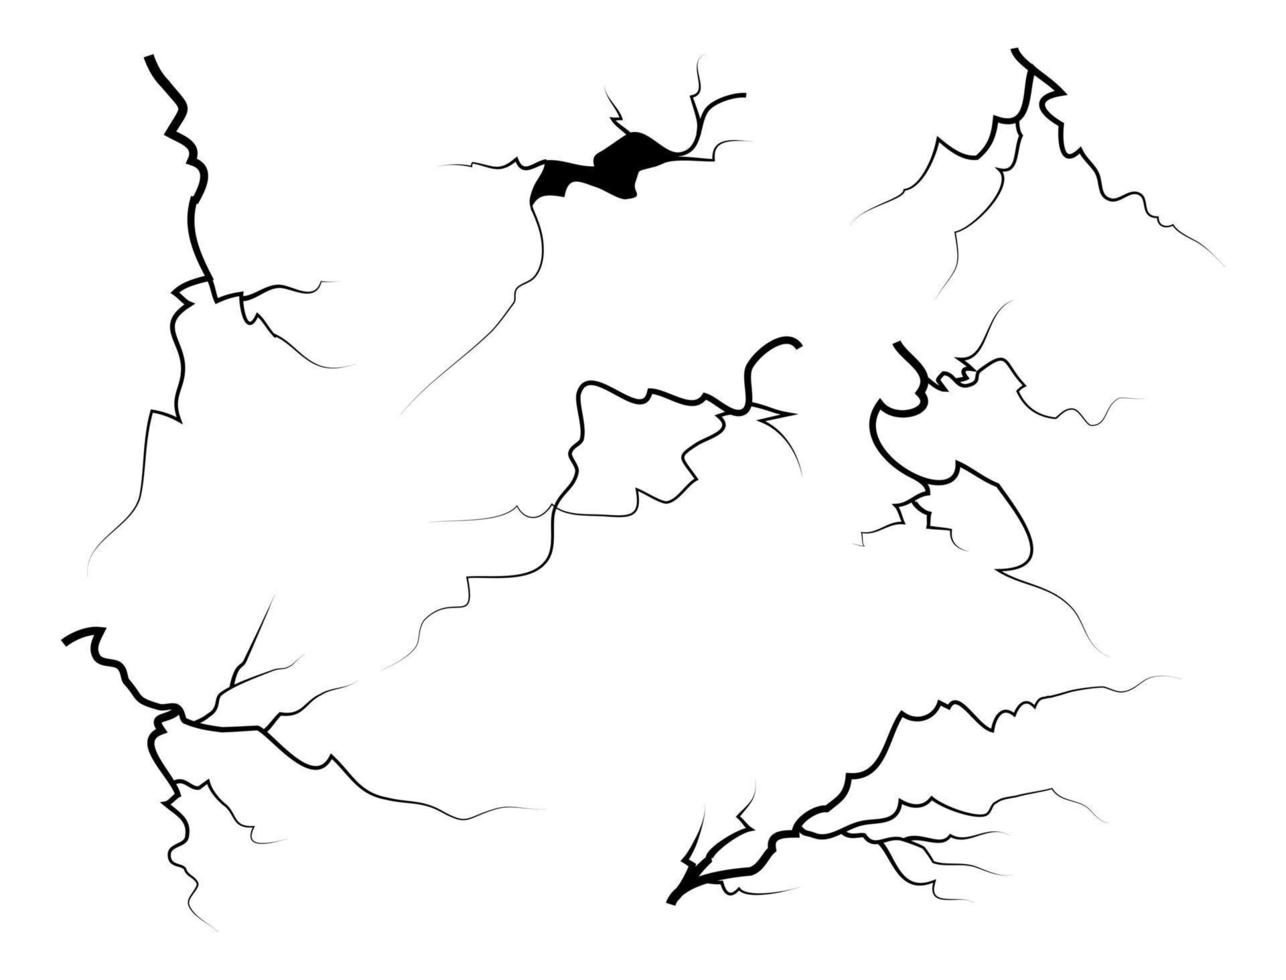 vidrio agrietado dibujado a mano, pared, suelo. efecto de tormenta eléctrica. juego de descanso de garabatos. ilustración vectorial vector